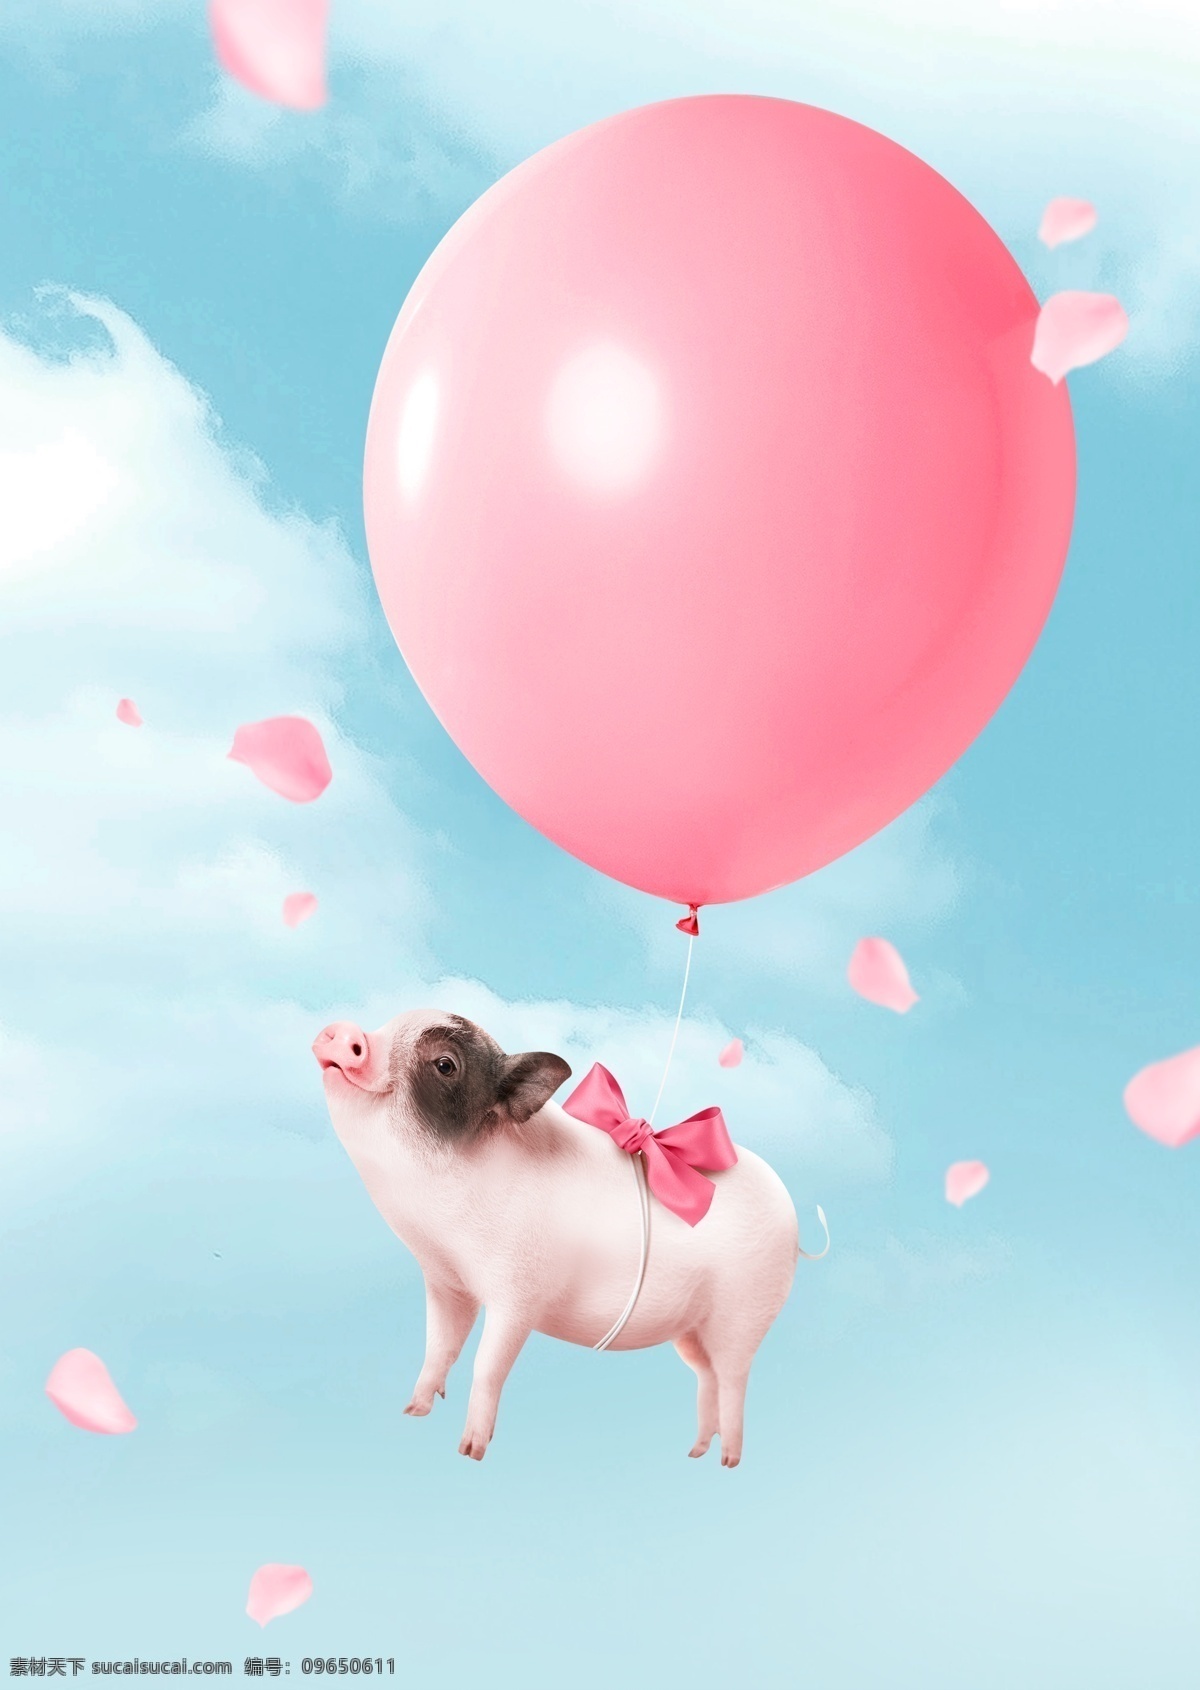 粉色 气球 小 猪 背景 花瓣 唯美 创意 海报背景 背景素材 乳猪 猪年背景 猪年素材 背景设计 猪年贺卡 贺卡背景 节日贺卡